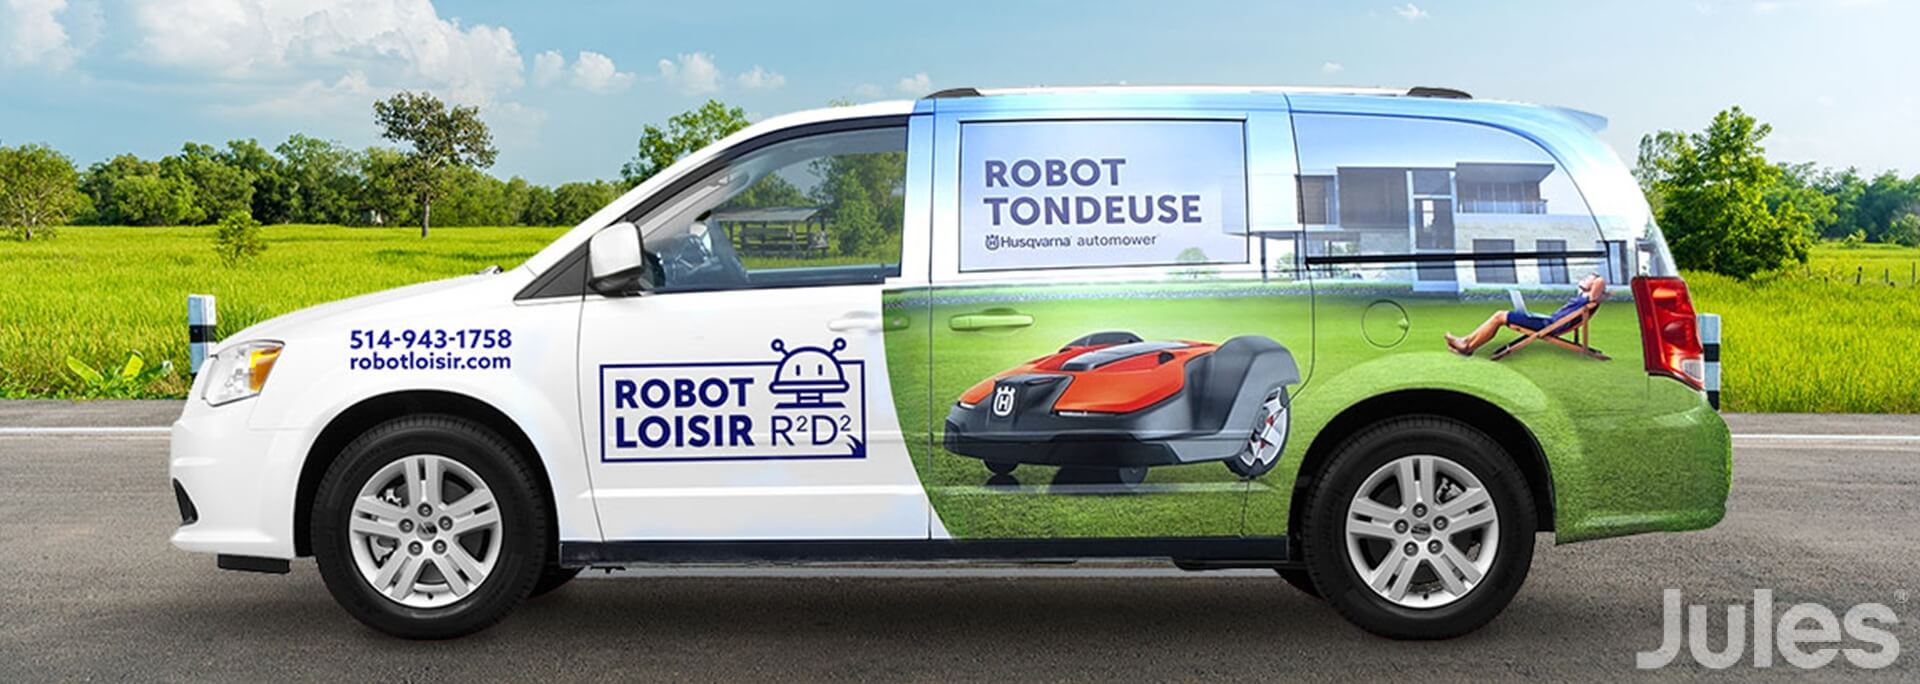 lettrage camion dodge caravan robot loisir robot tondeuse husqvarna aotomower wrap lettrage par jules communications